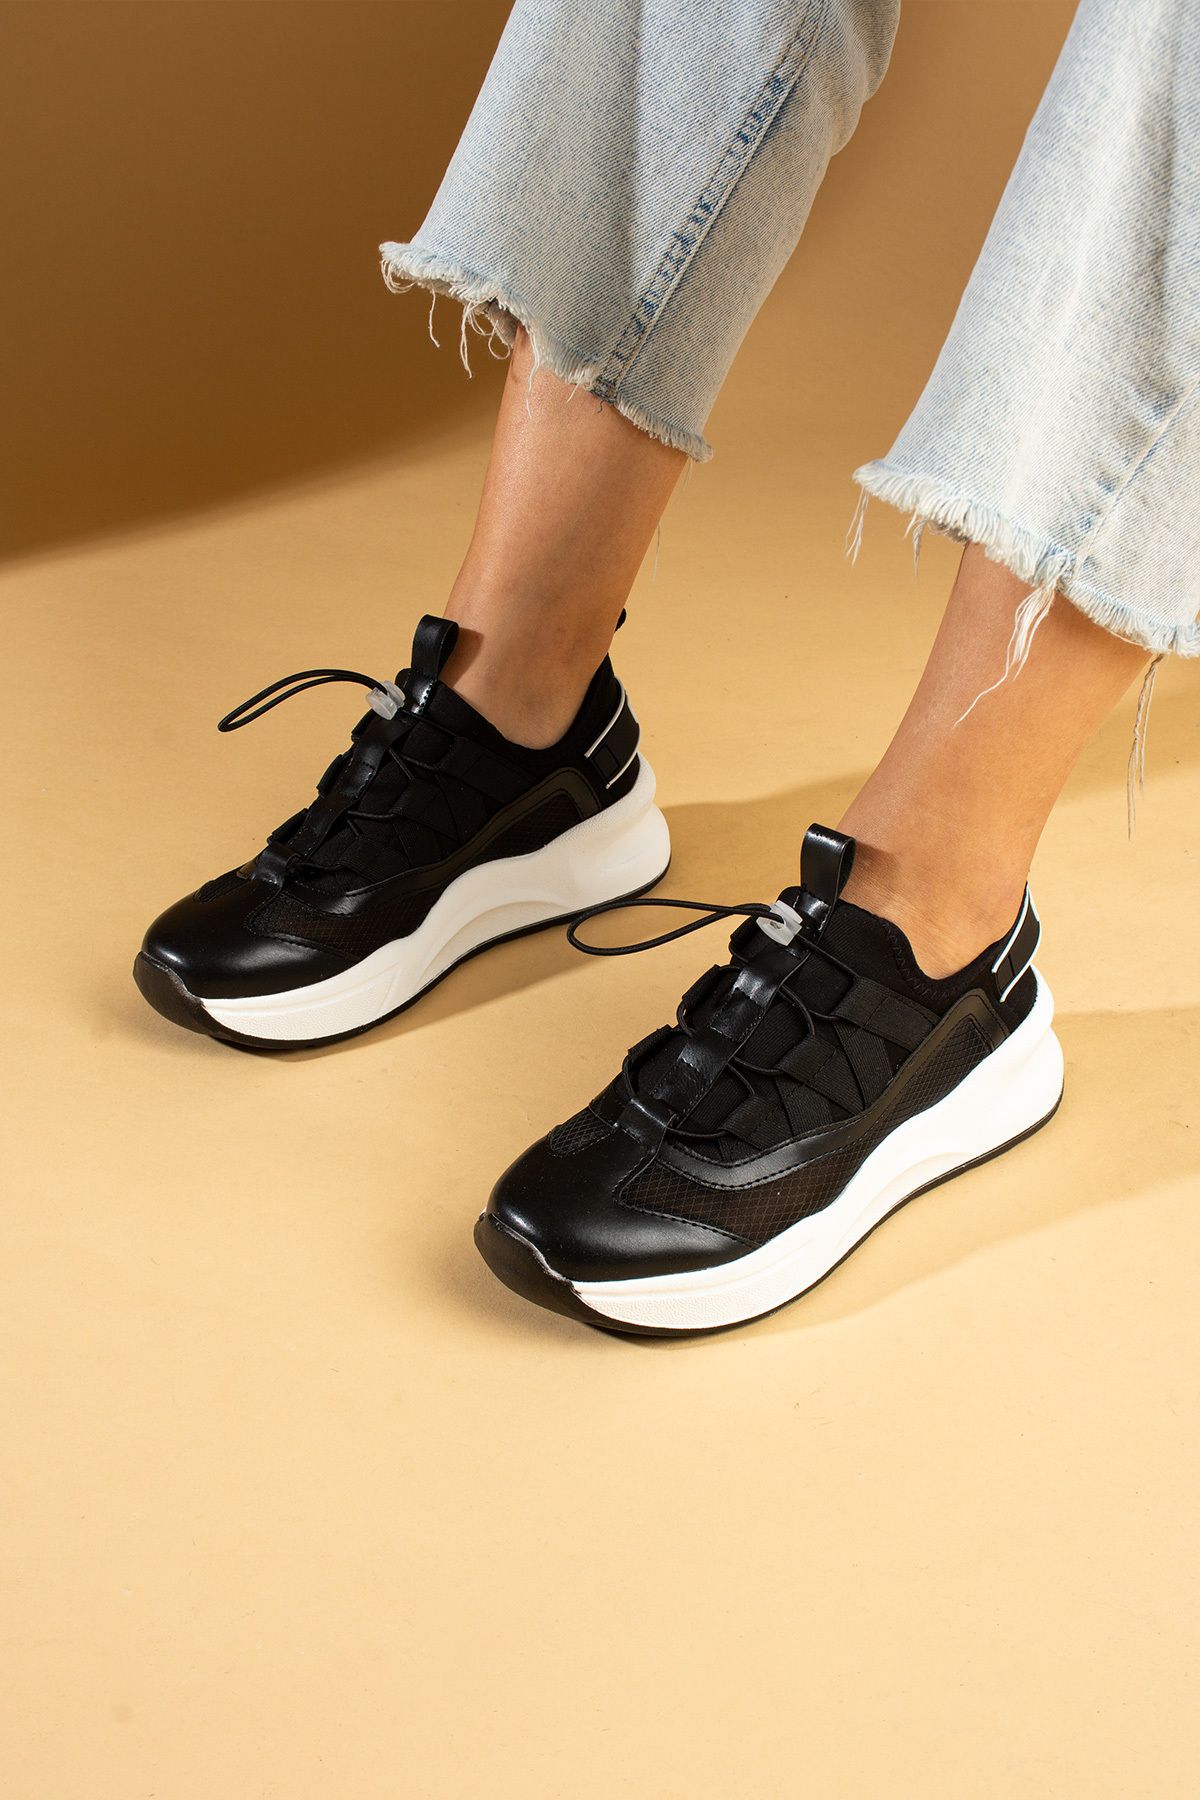 Pembe Potin Kadın Siyah Poli Rahat Taban Bağcıklı Sneaker Ayakkabı